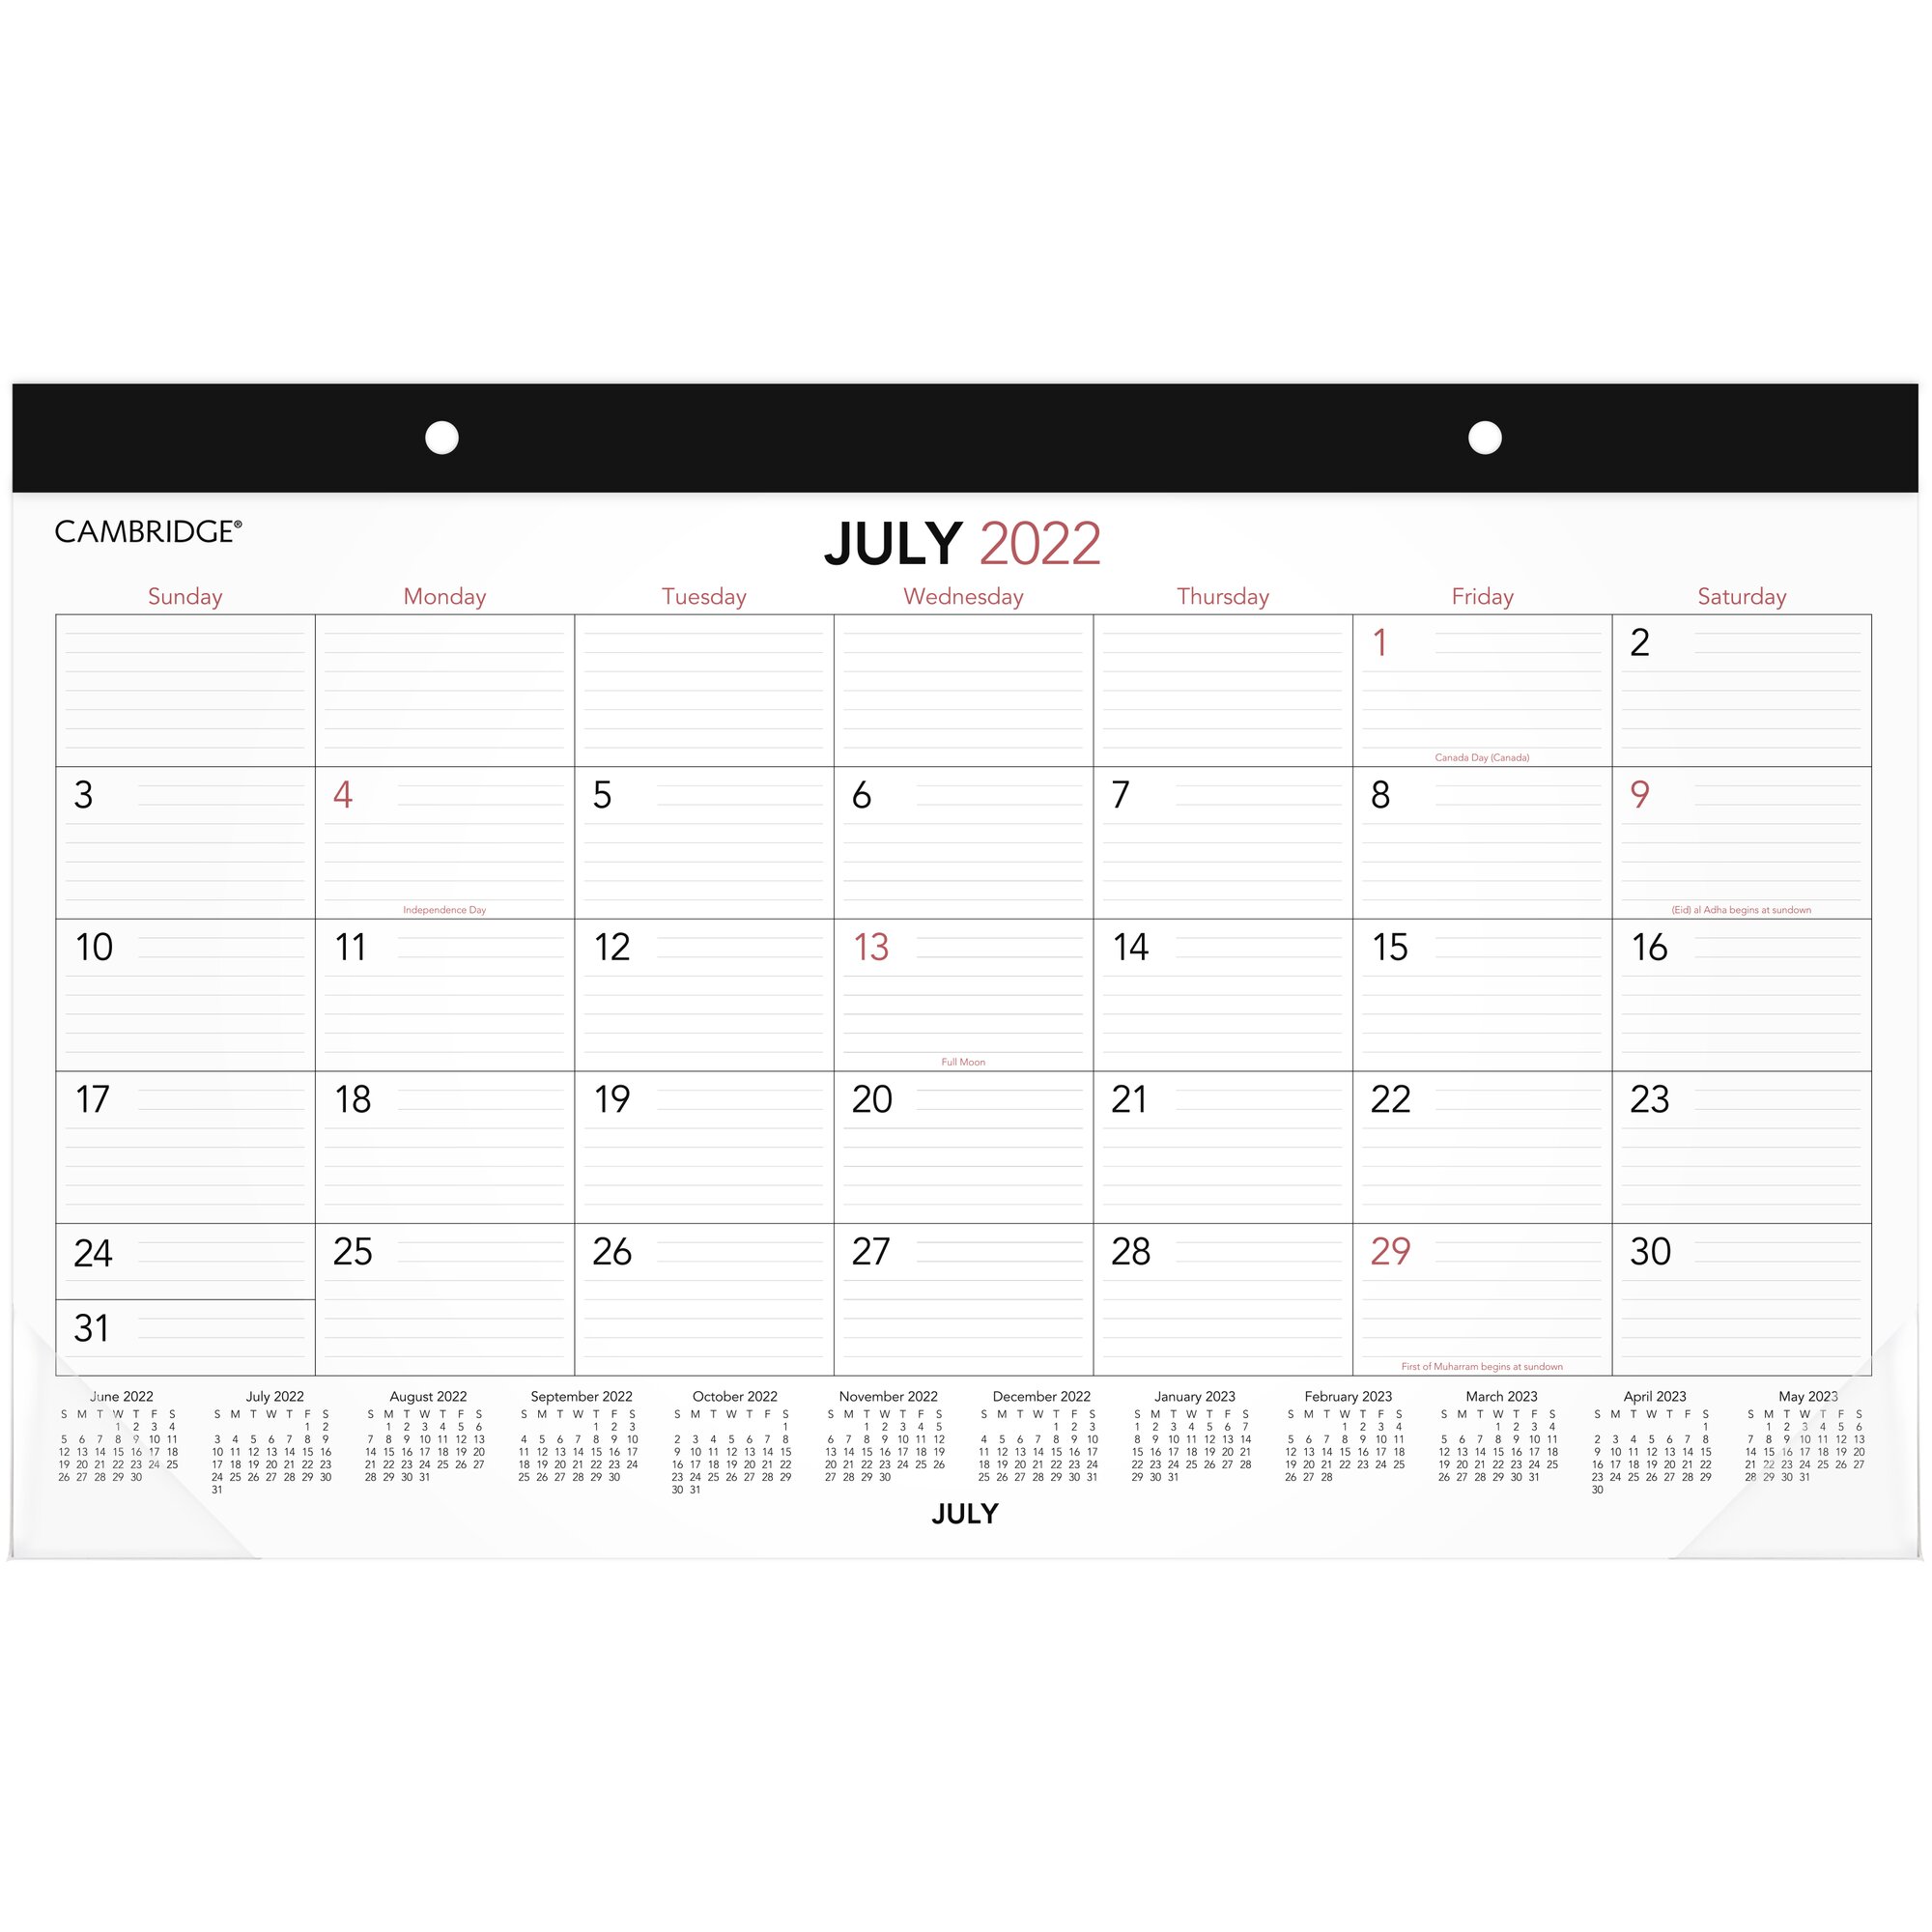 Cambridge Academic Calendar - Customize and Print